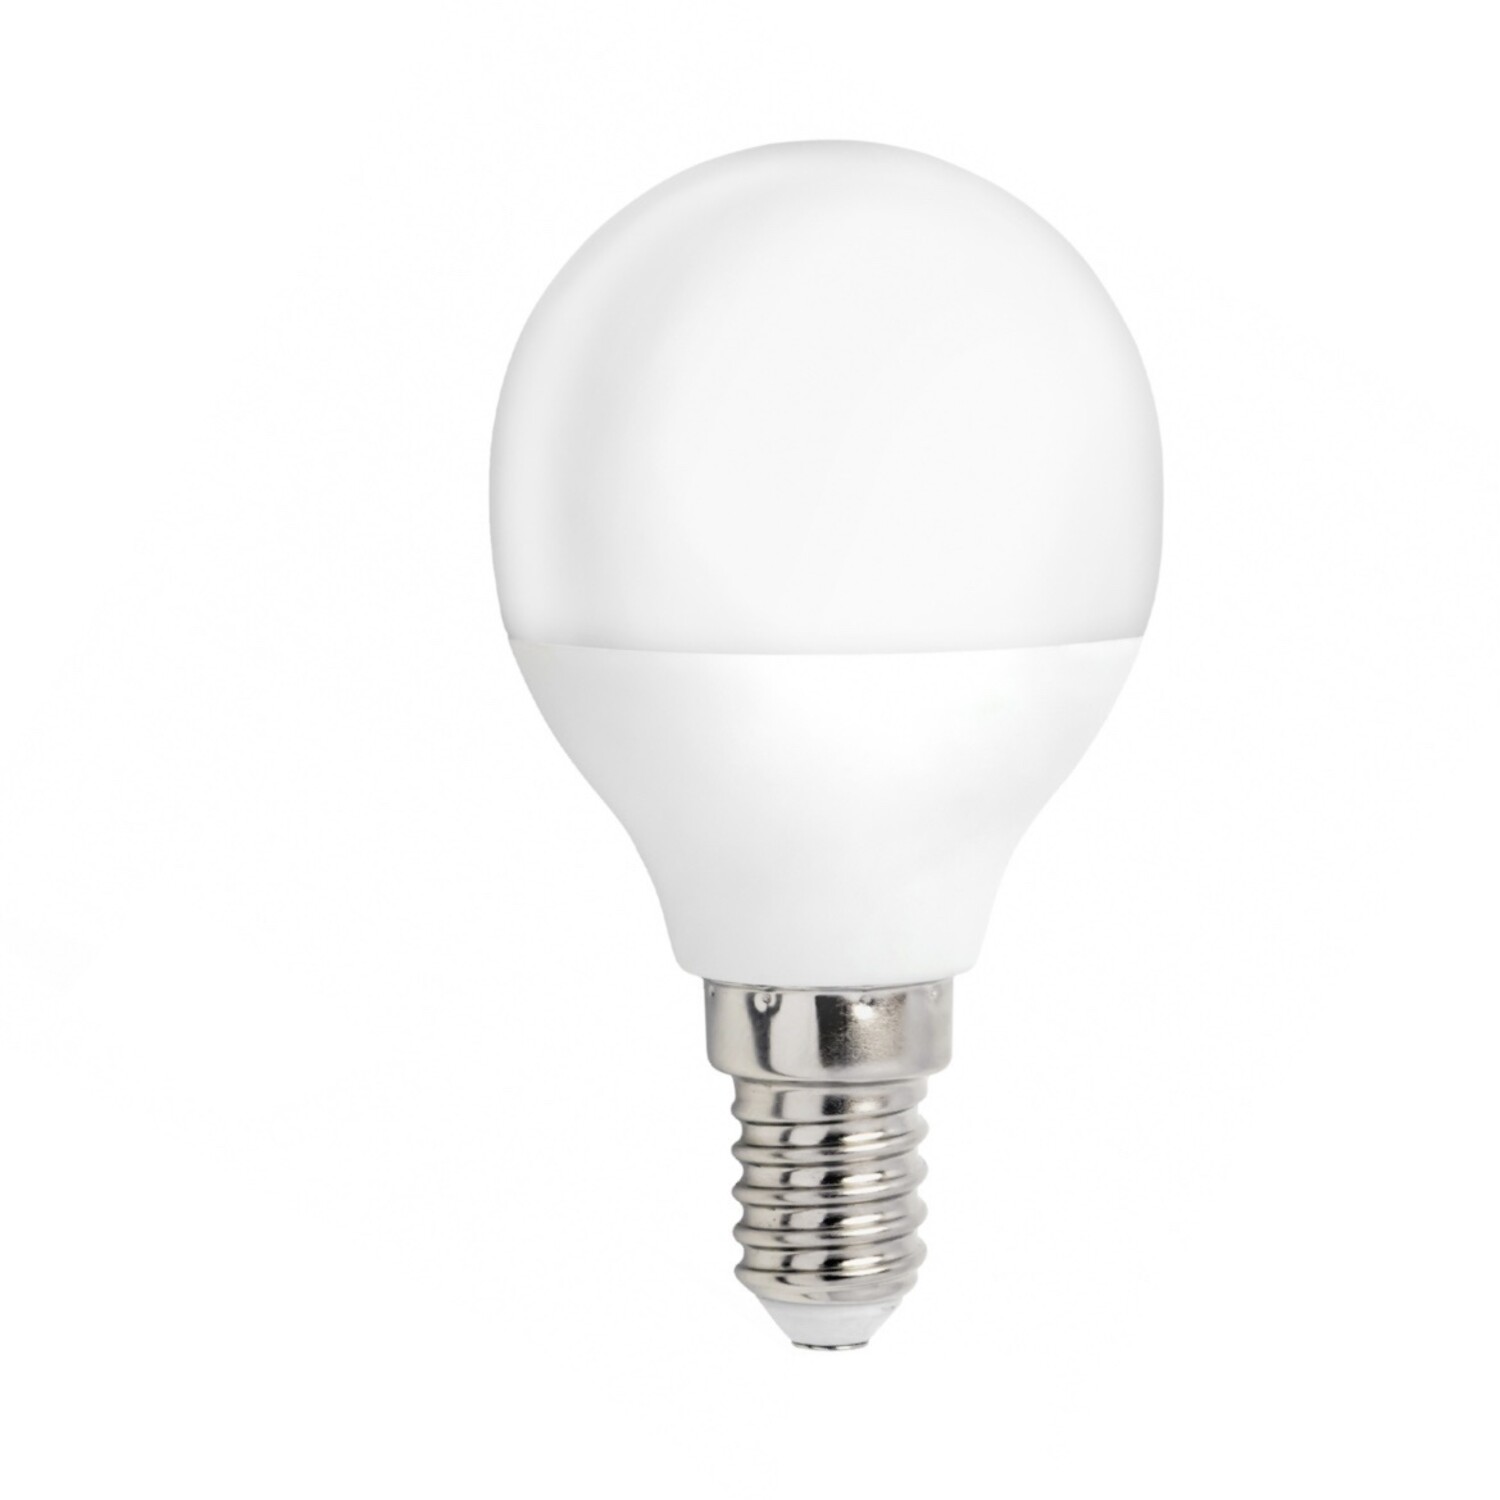 [Kostenloser Versand landesweit] LED Lampe E14 4W 3000K entspricht 25W - Warmweiß